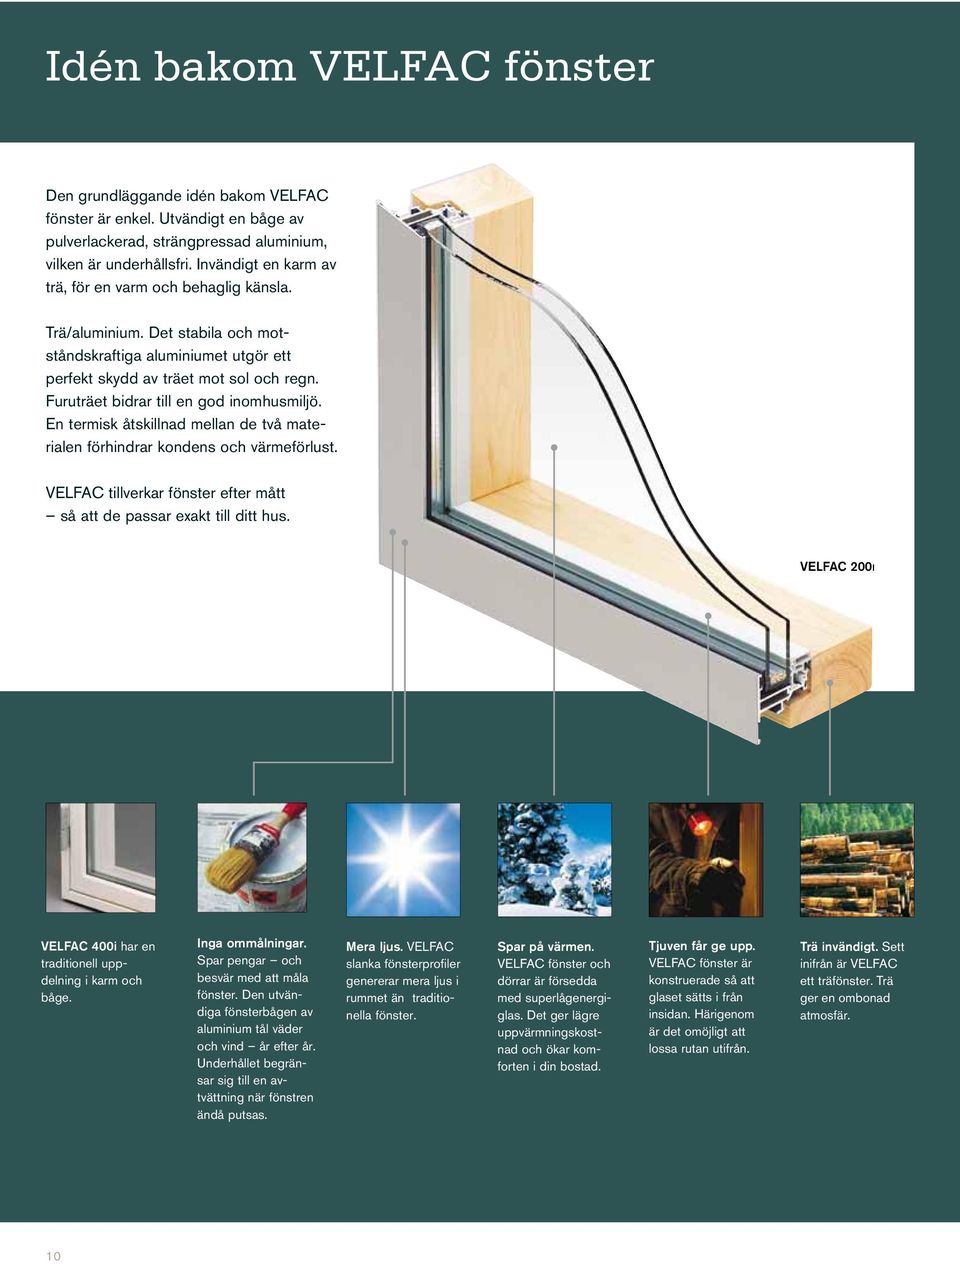 Furuträet bidrar till en god inomhusmiljö. En termisk åtskillnad mellan de två materialen förhindrar kondens och värmeförlust.